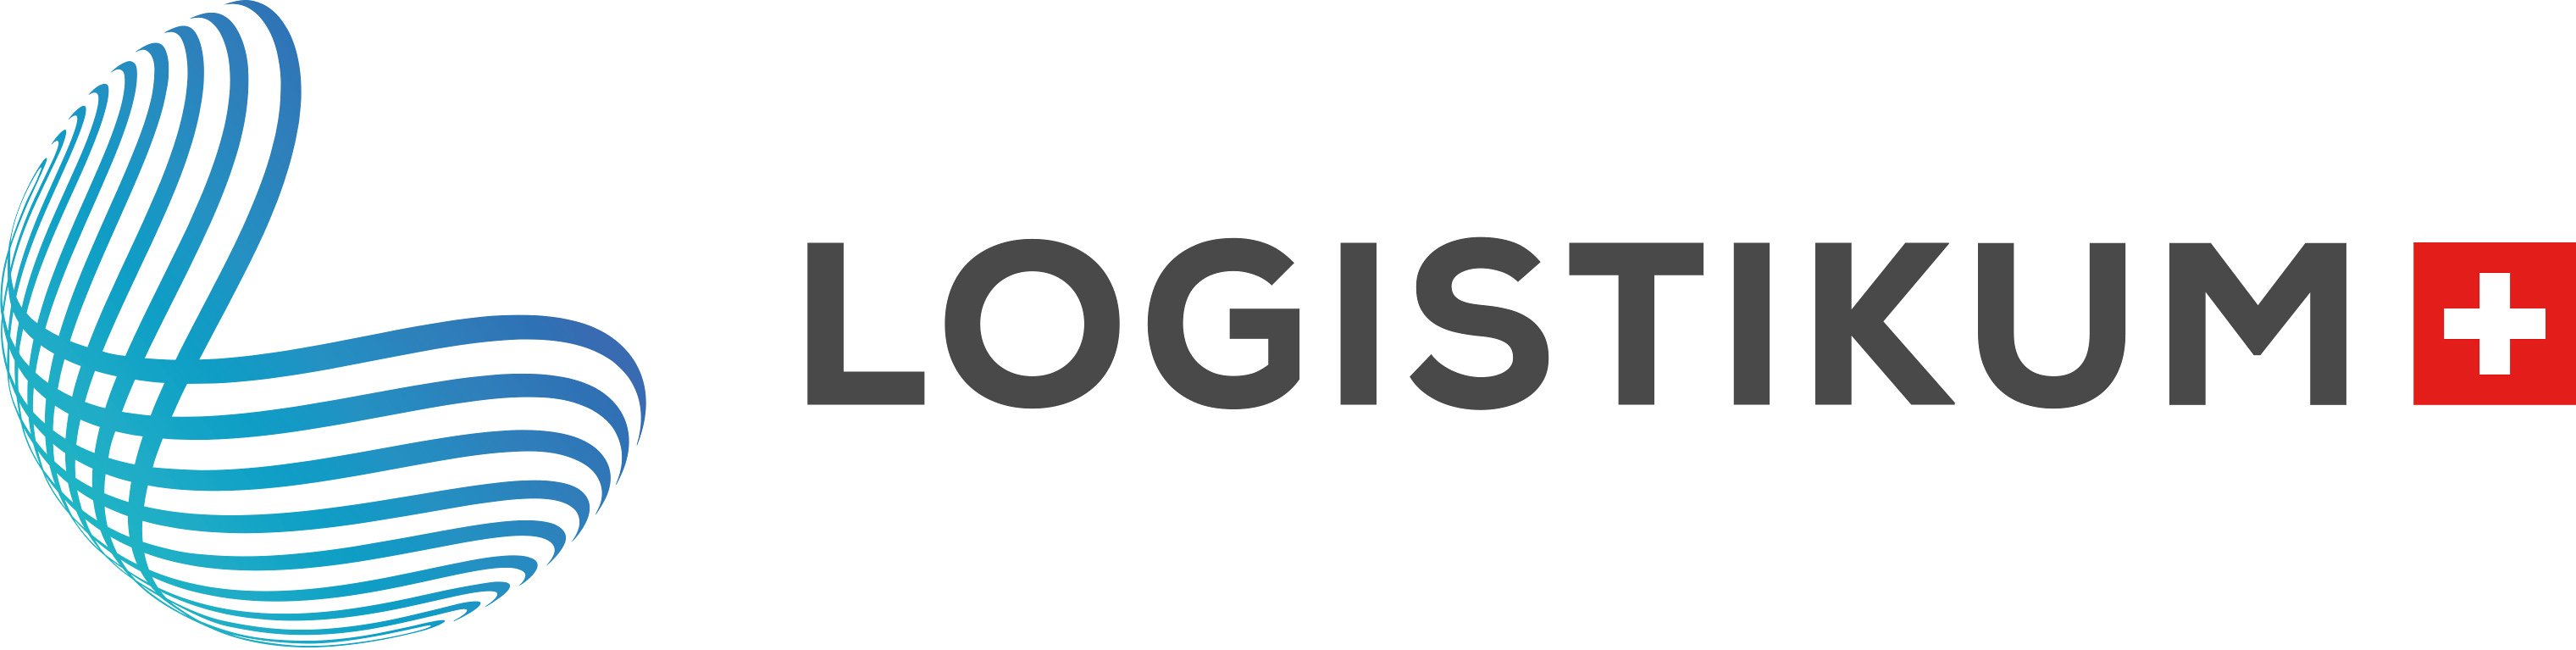 logistikum-schweiz_logo-quer_rgb